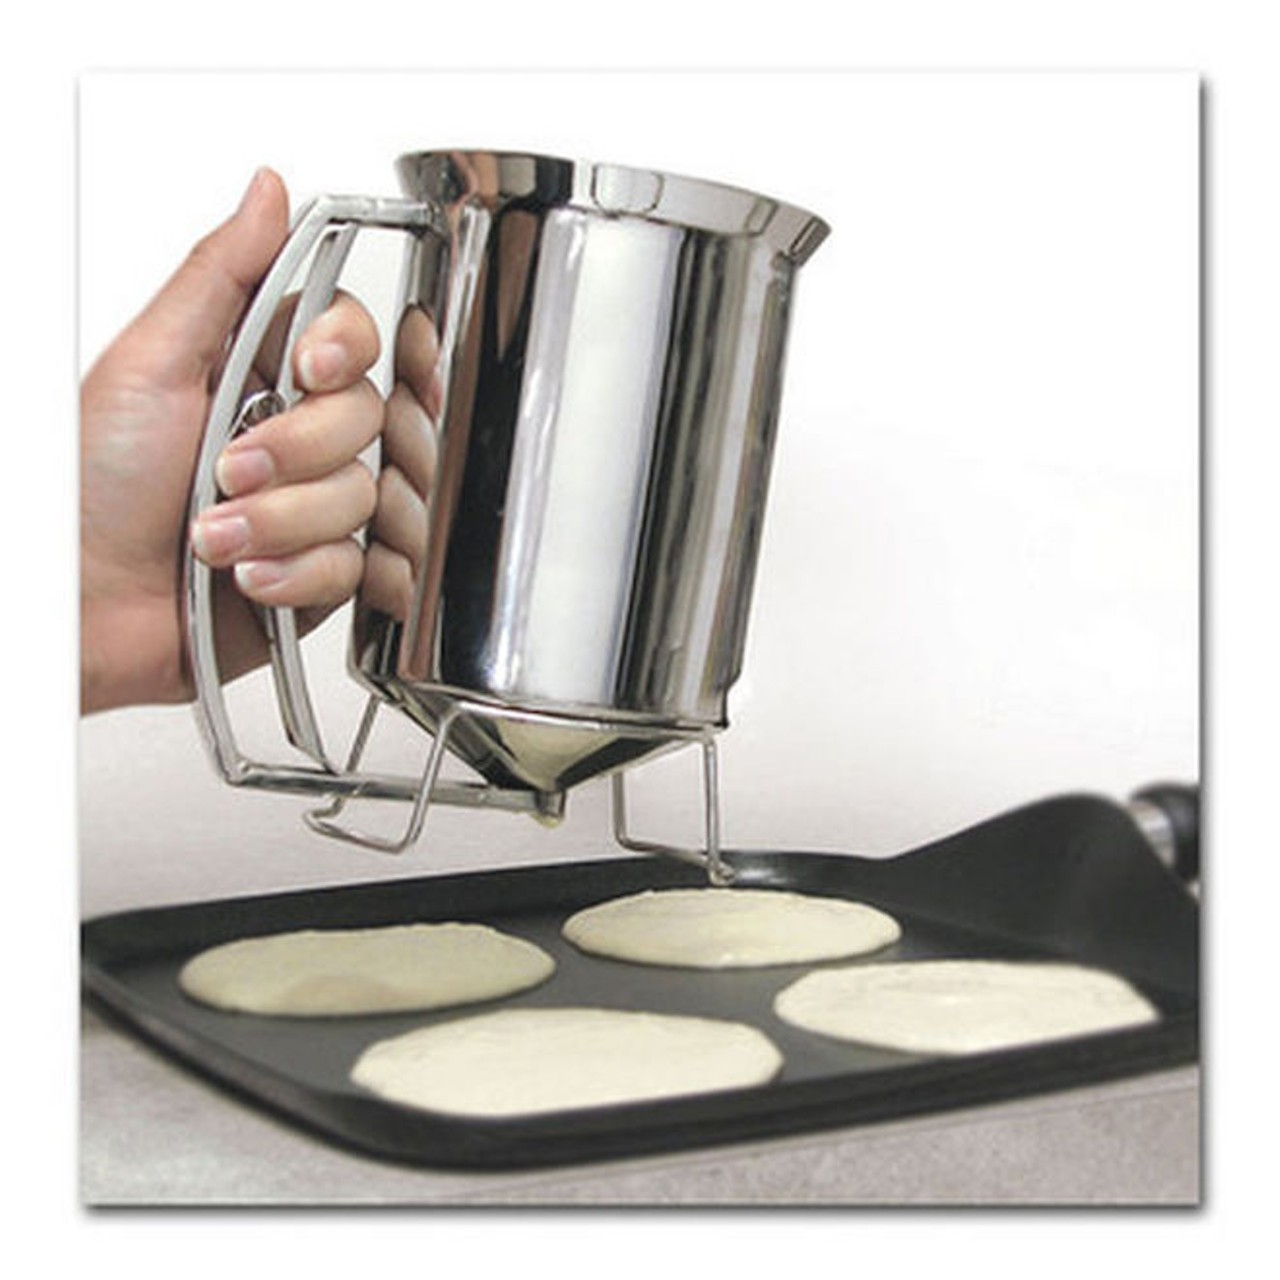 A pancake-batter dispenser.